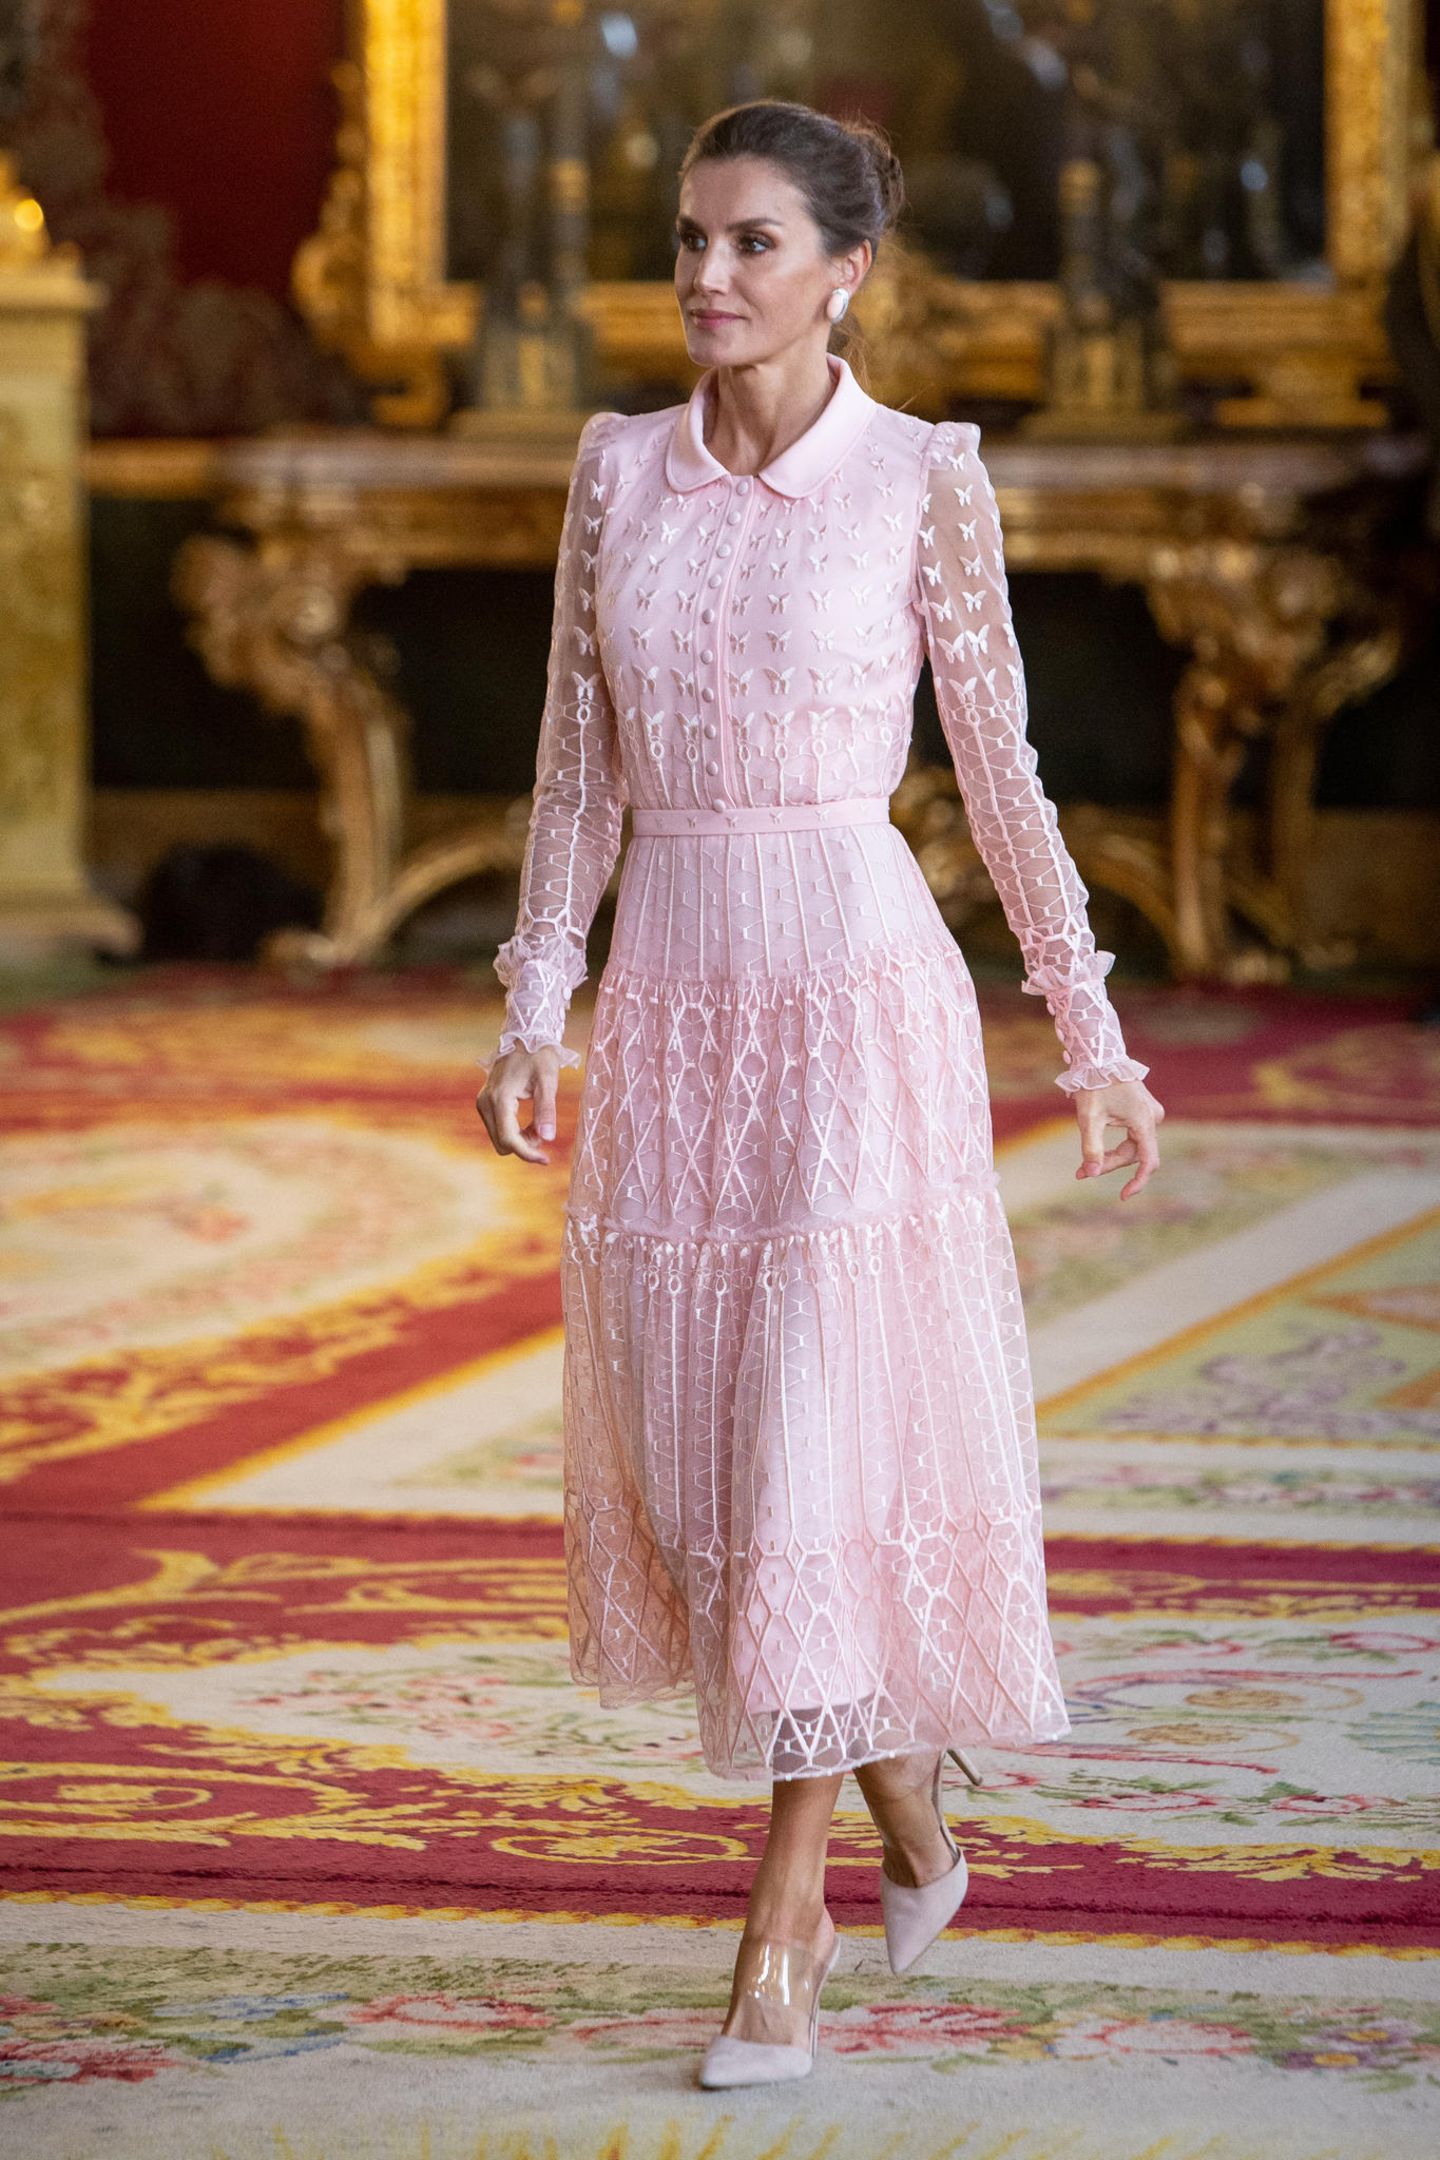 "Pretty in Pink" lautet ein Motto, das wie für Königin Letizia gemacht zu sein scheint. Zur Militärparade am spanischen Nationalfeiertag erschien die Royal in einen rosafarbenen Traum aus Chiffon und legte so einen glamurösen und vor allem romatischen Auftritt hin. Hingucker an ihrem Varela-Dress: Die mit Stoff überzogene Knopfleiste, die Mini-Puffärmel und die unzähligen aufgestickten Schmetterlinge. Dazu stylte Letizia ...